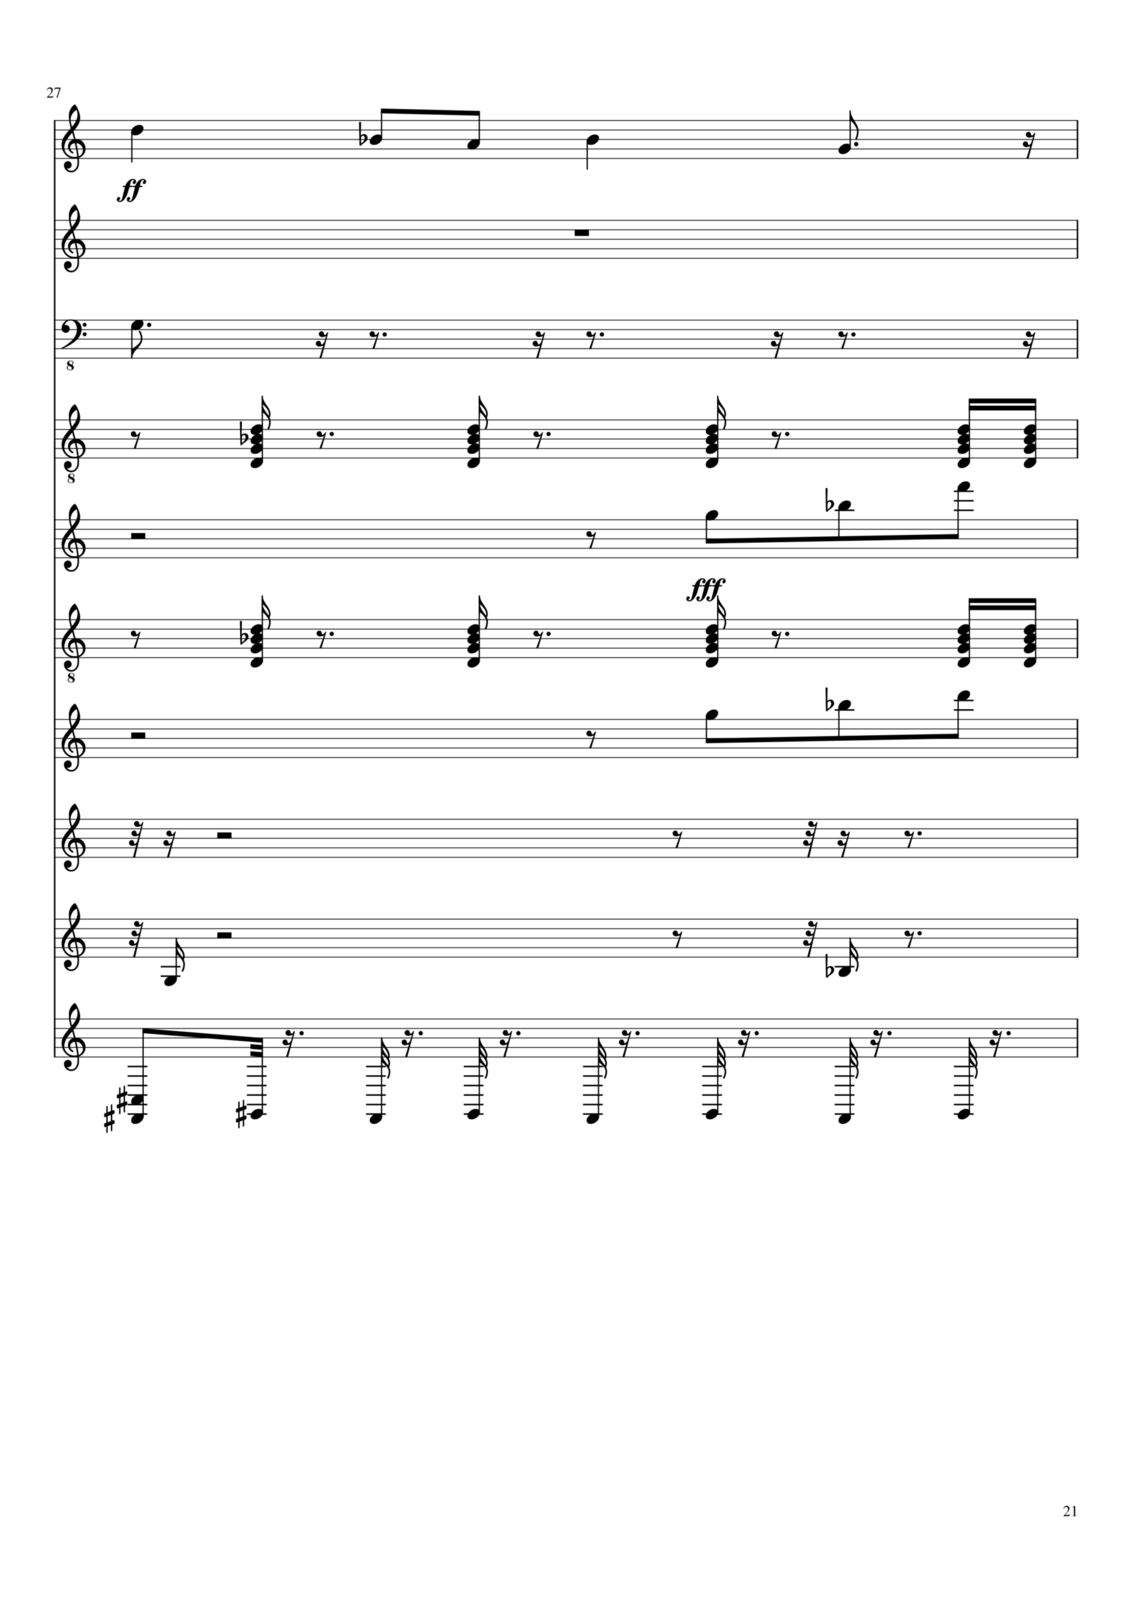 Zvezdnyiy dojd slide, Image 3